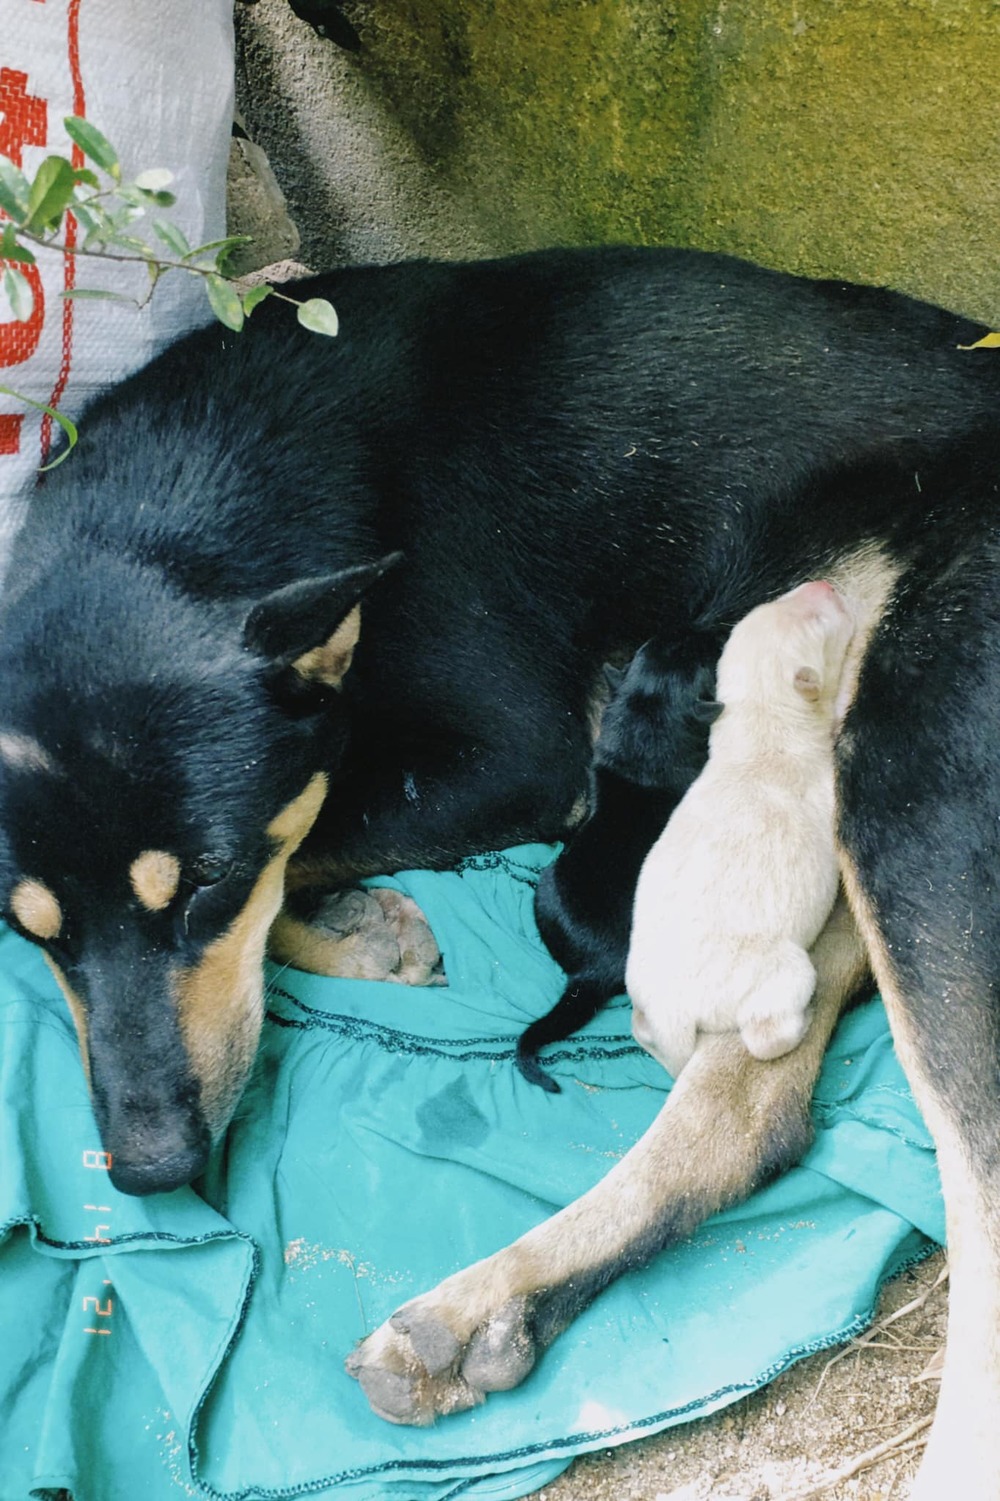  
Chó mẹ đẻ được 2 chú cún xinh xắn. (Ảnh: FB N.T.T.V)